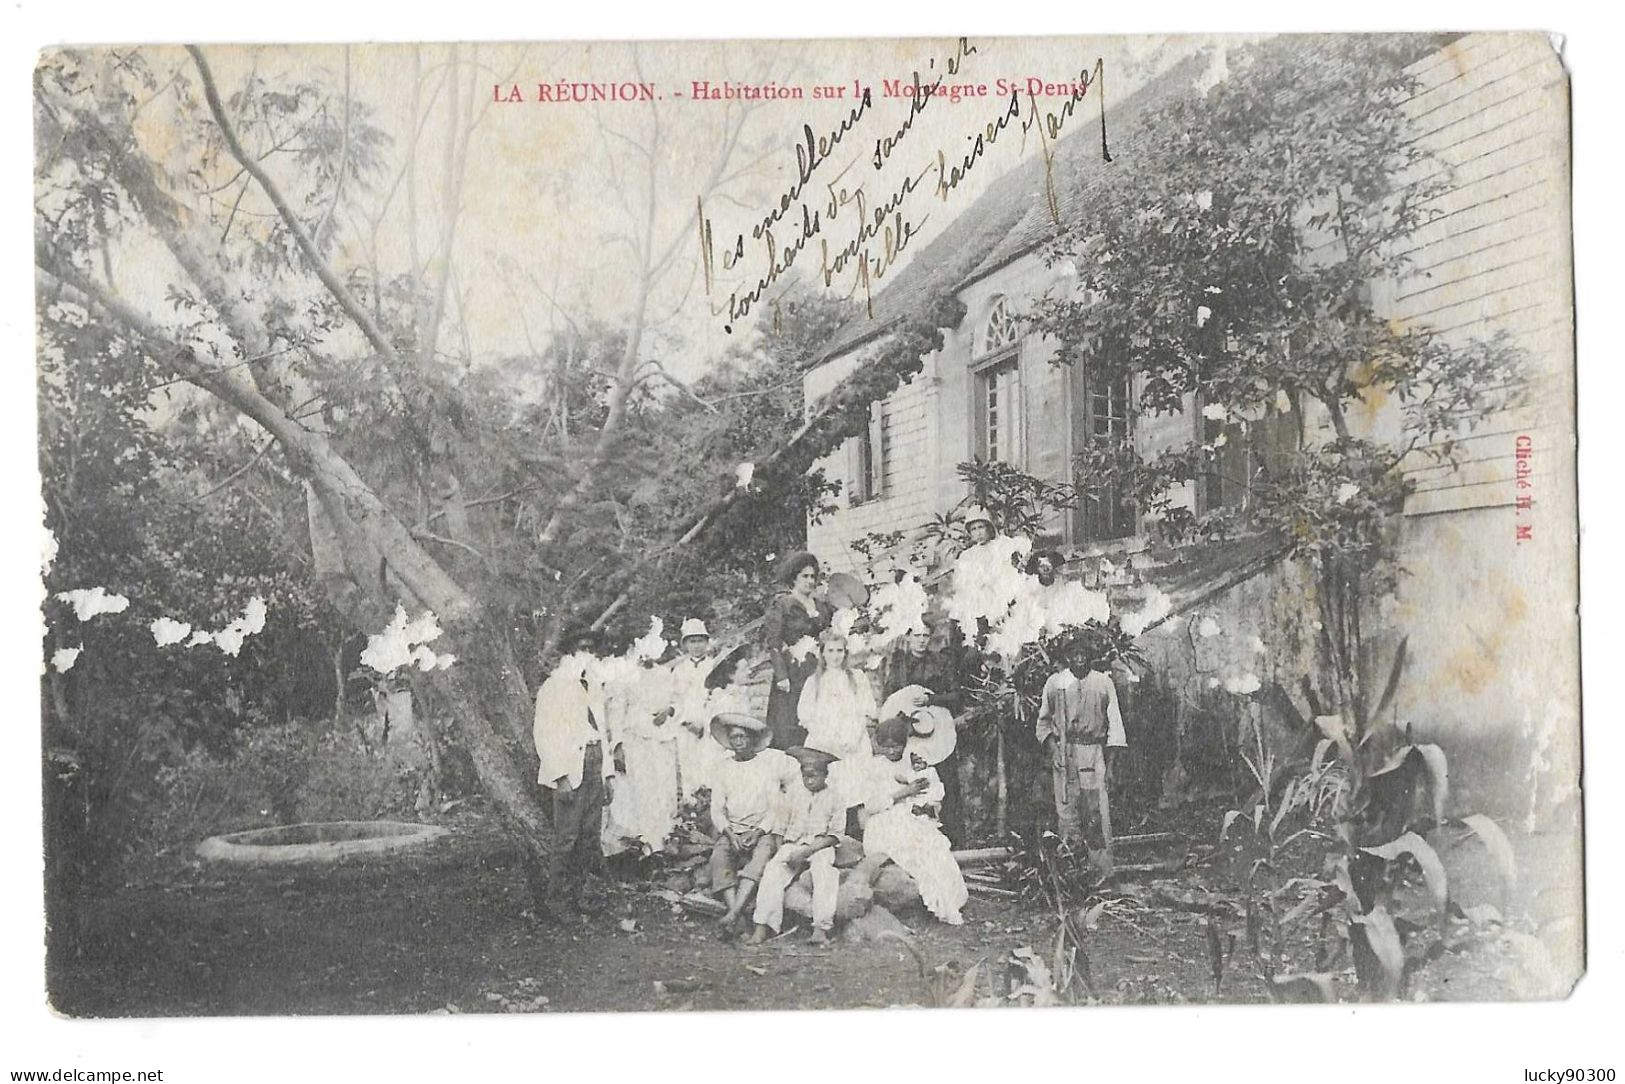 TAMPON LA REUNION A MARSEILLE LV N° 4 - 2 DECEMBRE 1903 - SUR CARTE POSTALE SAINT DENIS - Saint Denis